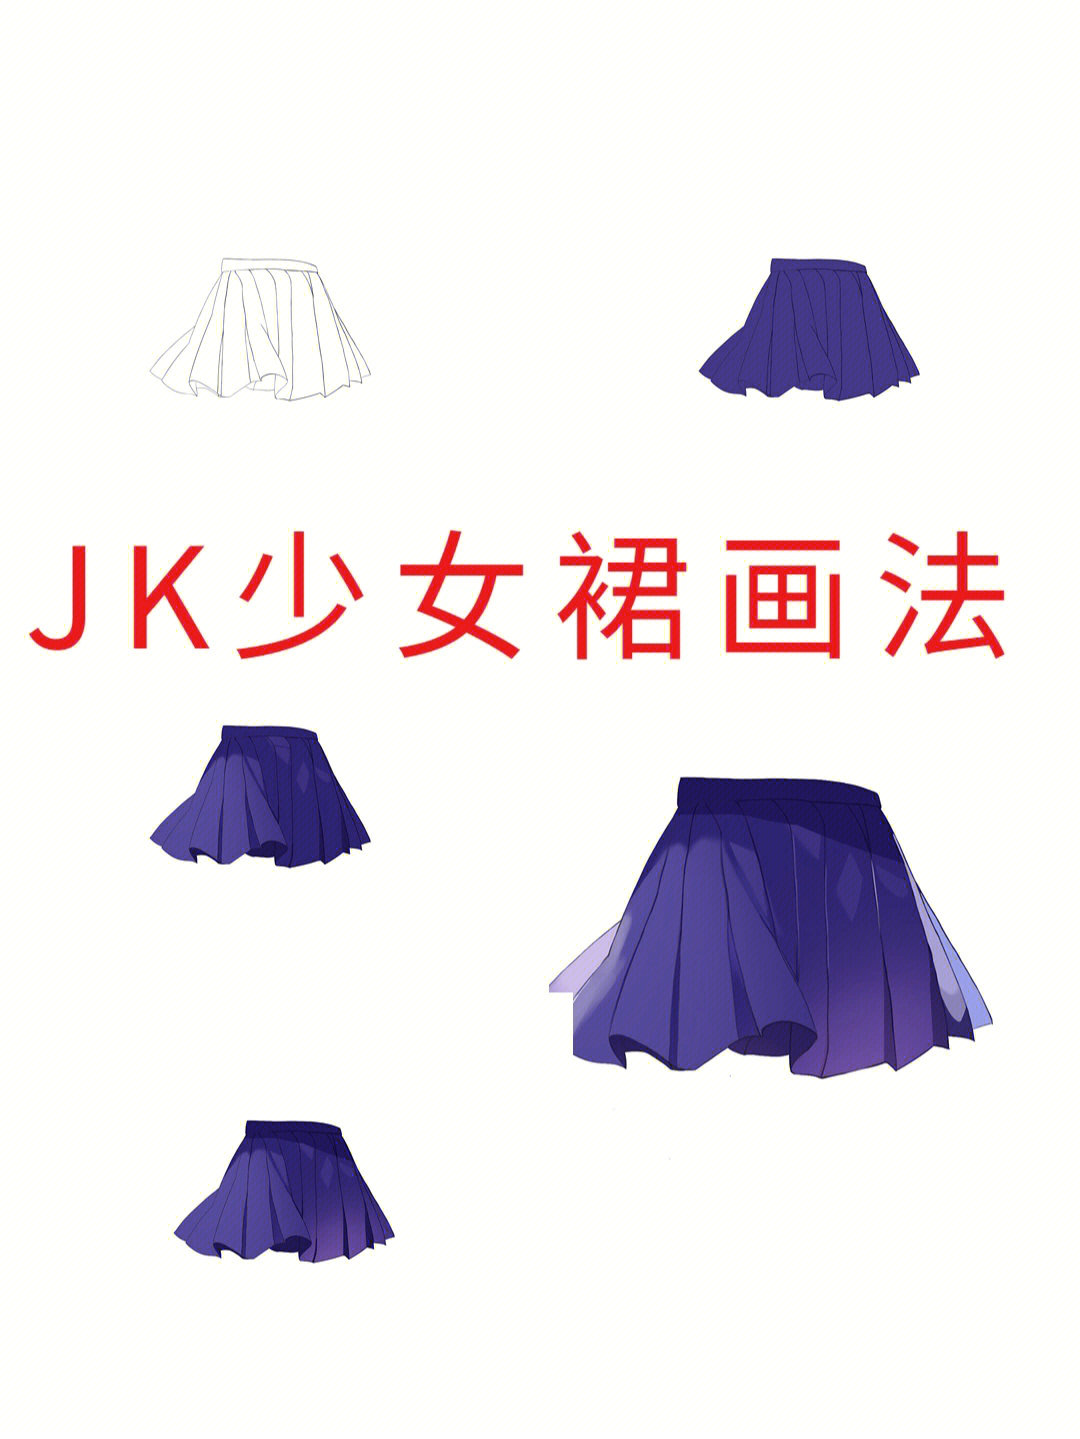 jk裙子线稿图图片